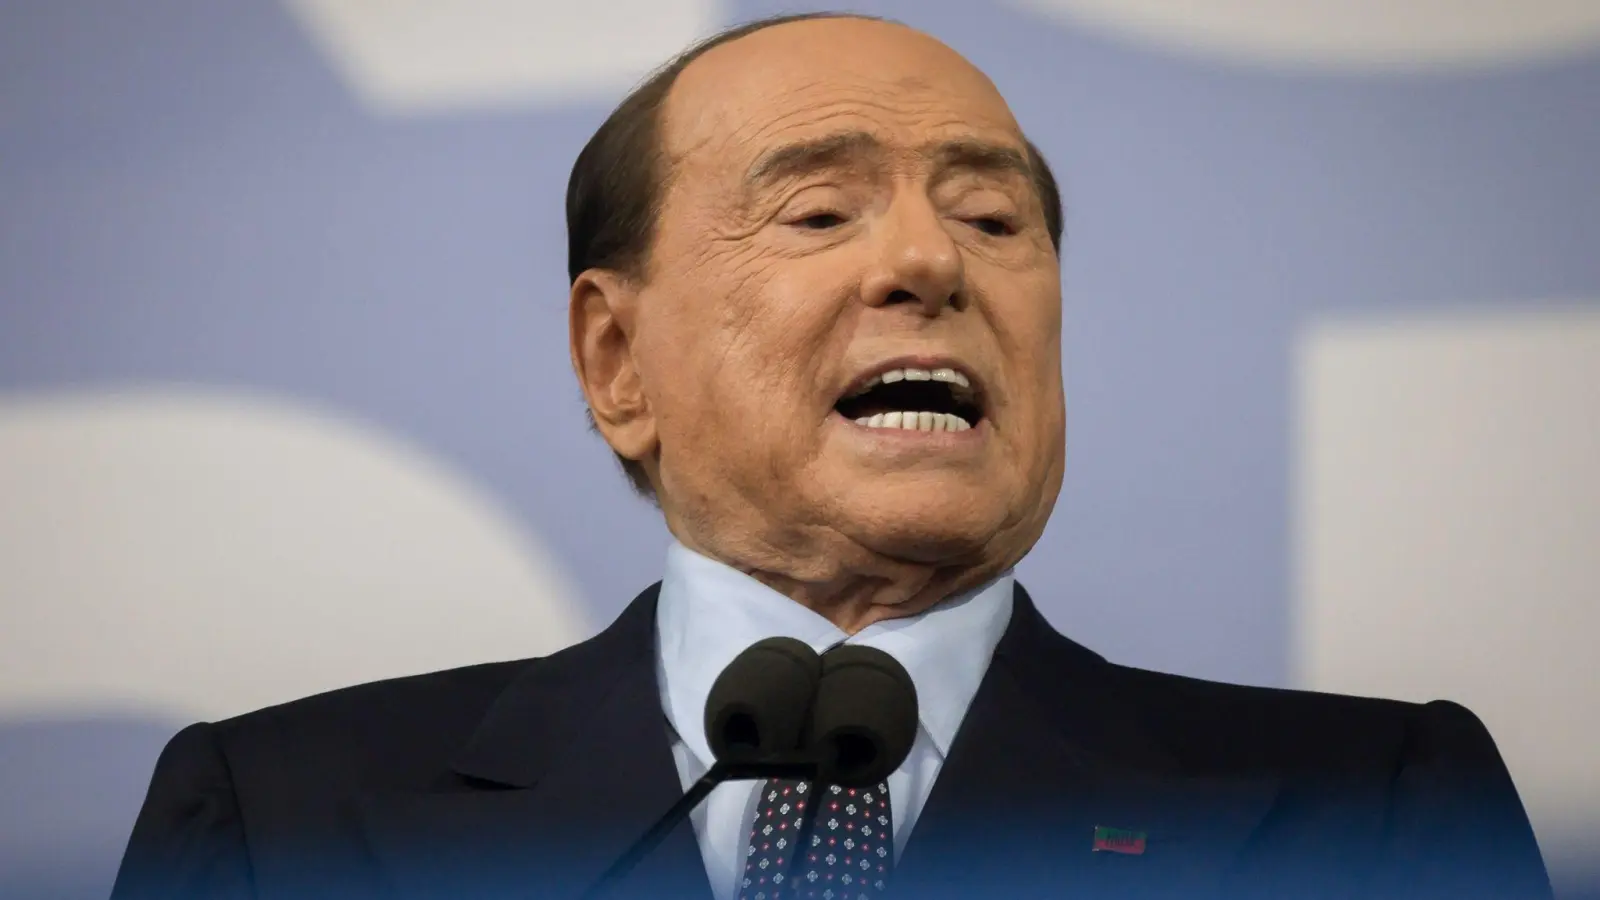 Die von Silvio Berlusconi gegründete Firma Fininvest hält rund die Hälfte der Anteile an dem Medienkonzern MFE. (Foto: Valeria Ferraro/SOPA Images via ZUMA Press Wire/dpa)